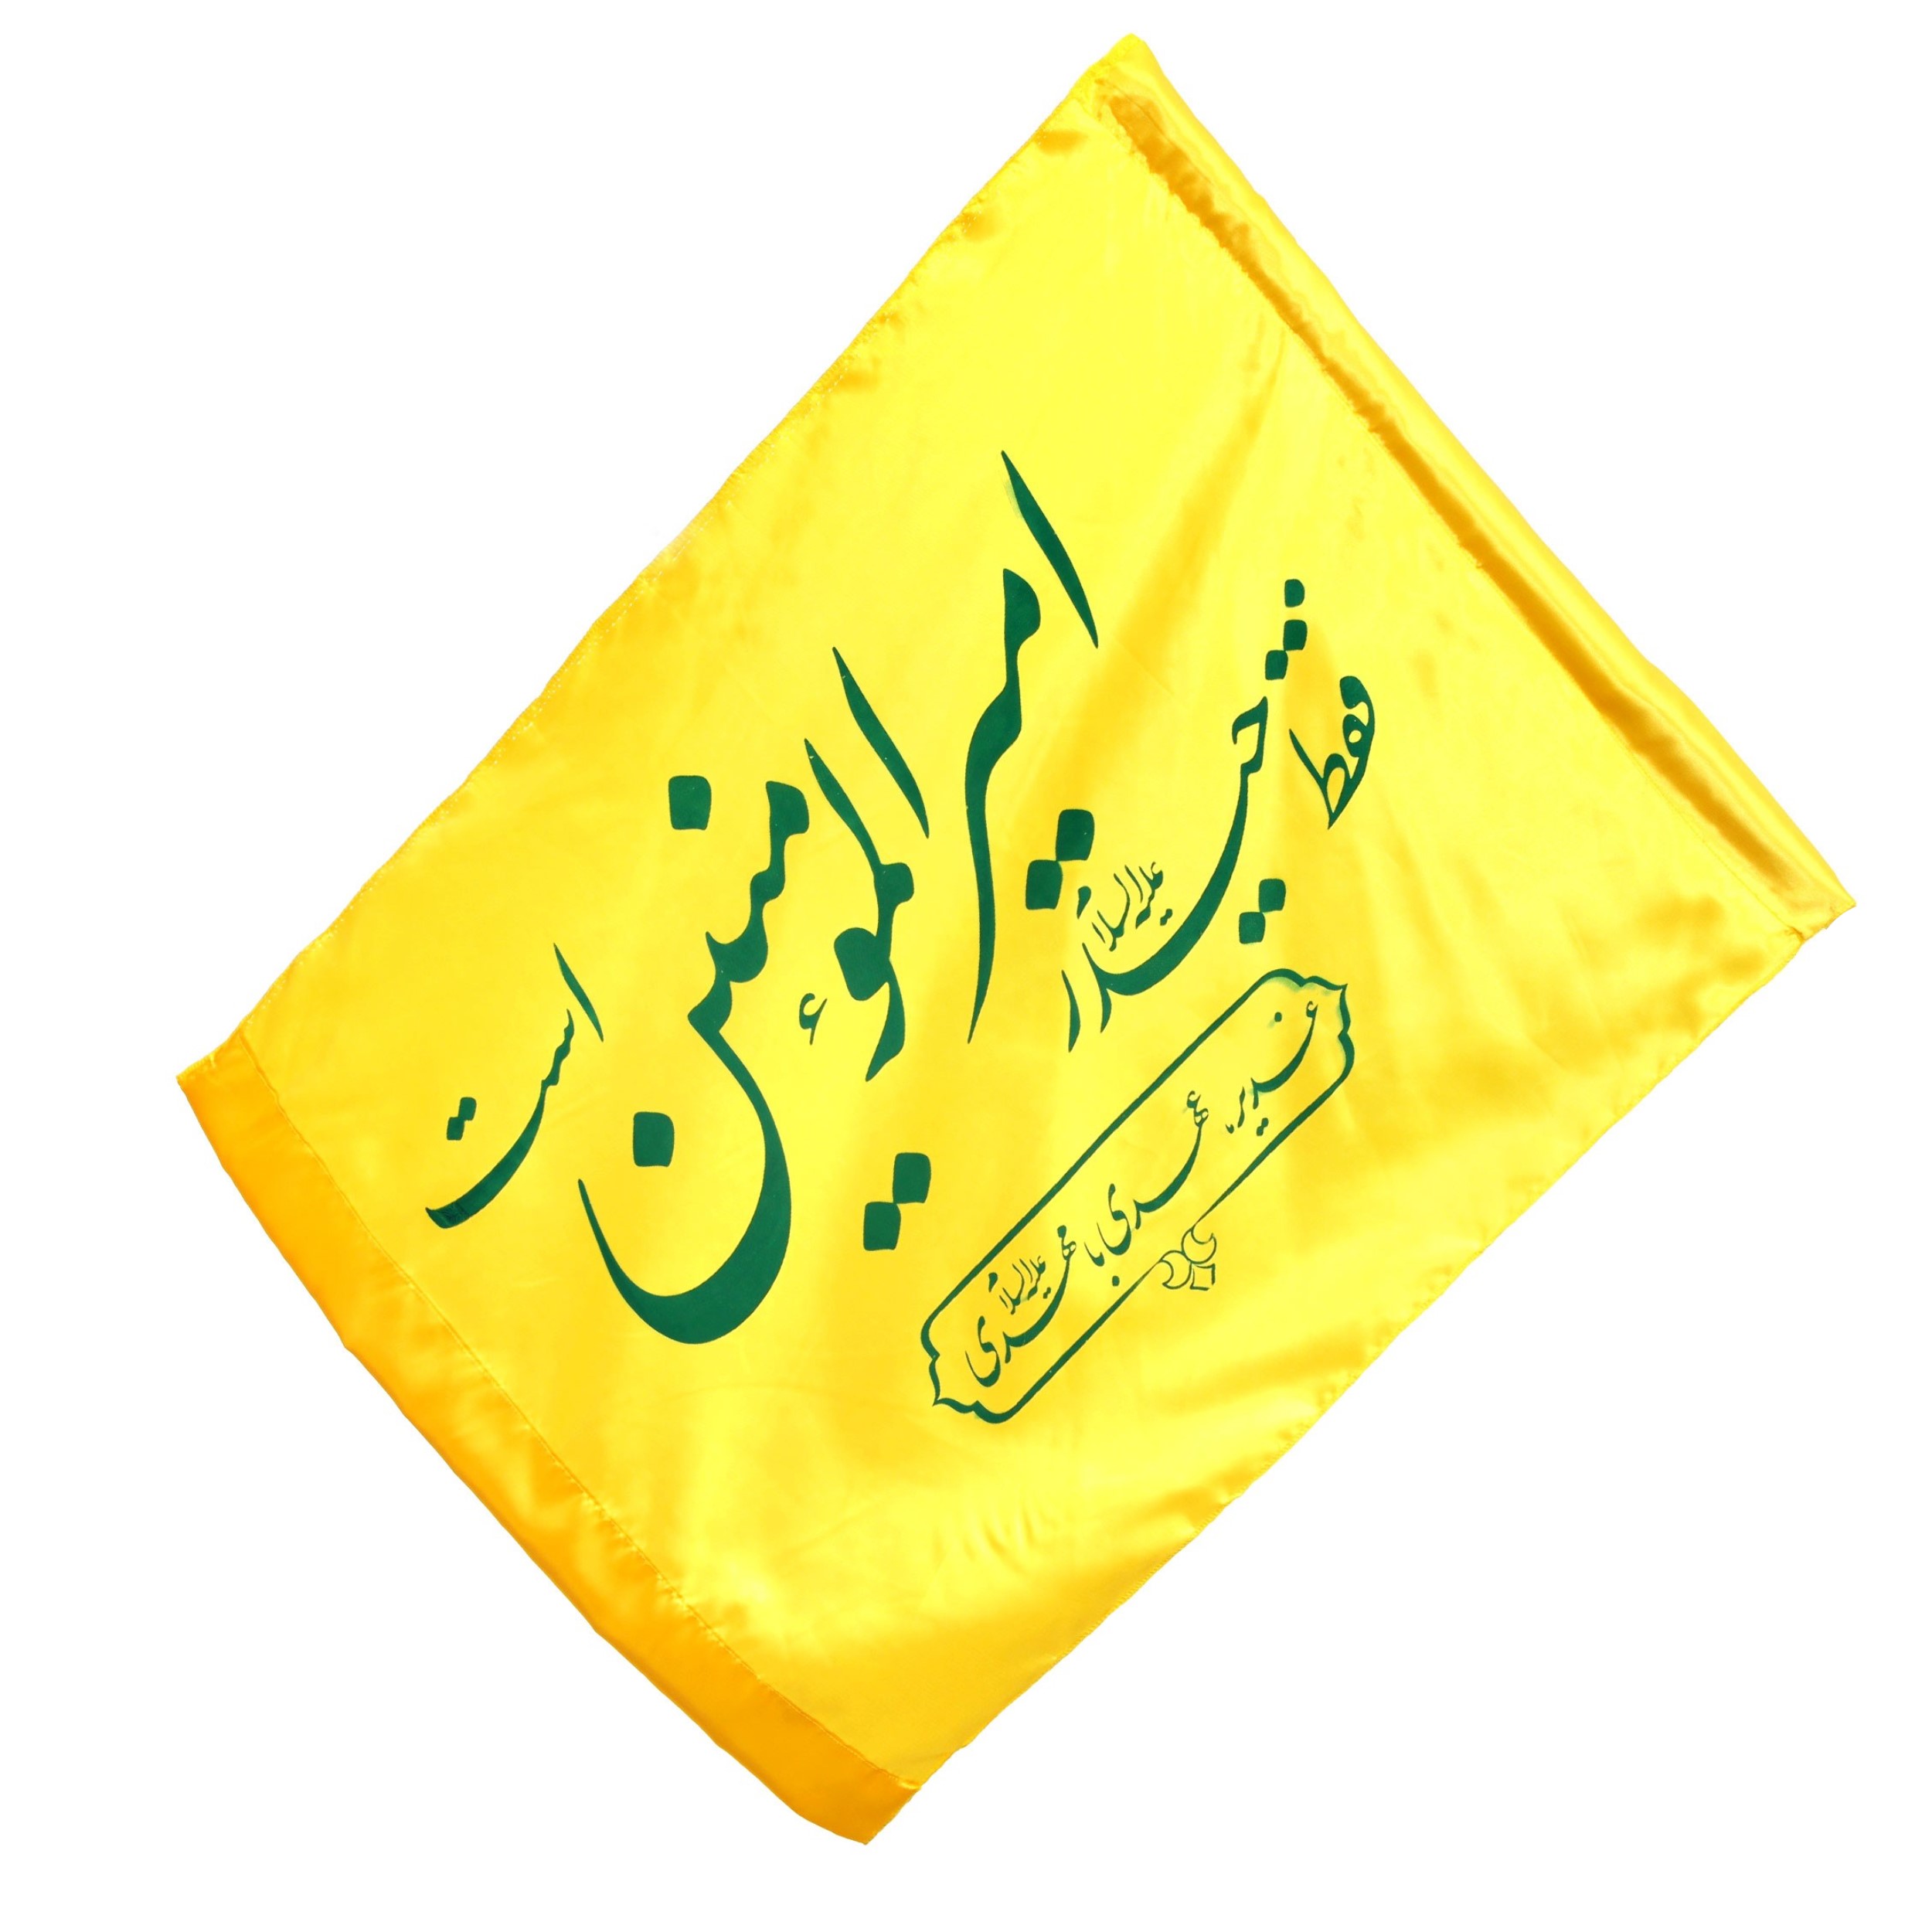 پرچم طرح غدیر فقط حیدر امیرالمومنین است کد 30001459